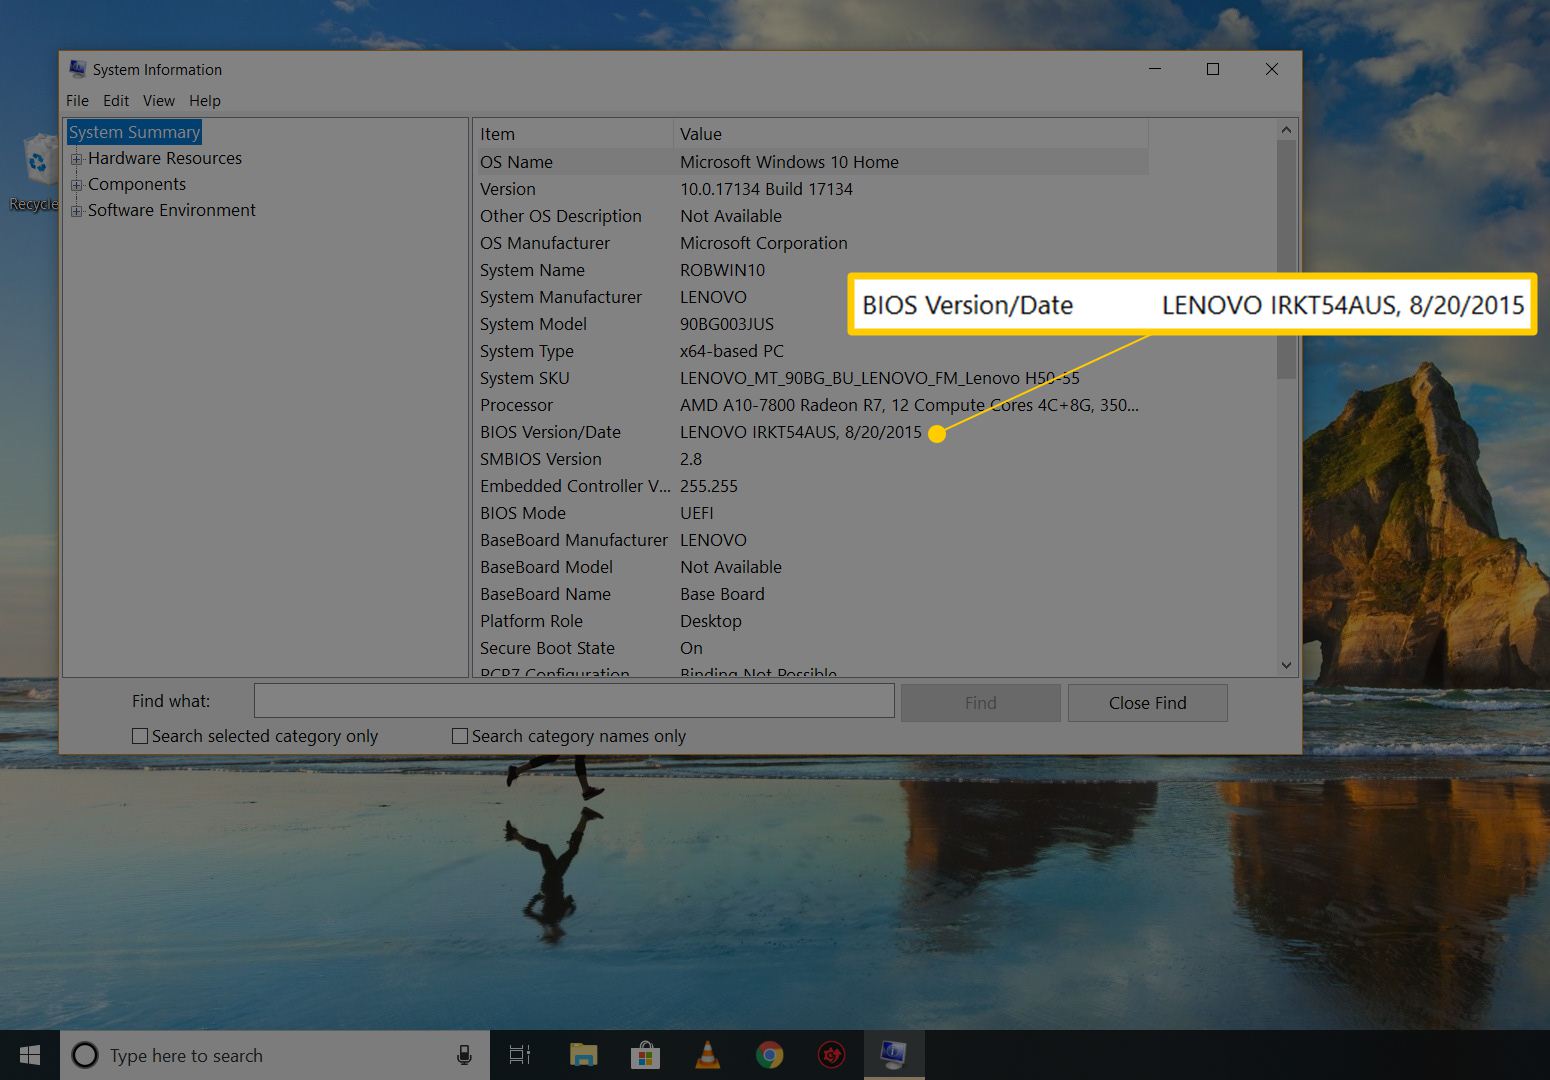 Versão / data do BIOS nas informações do sistema no Windows 10